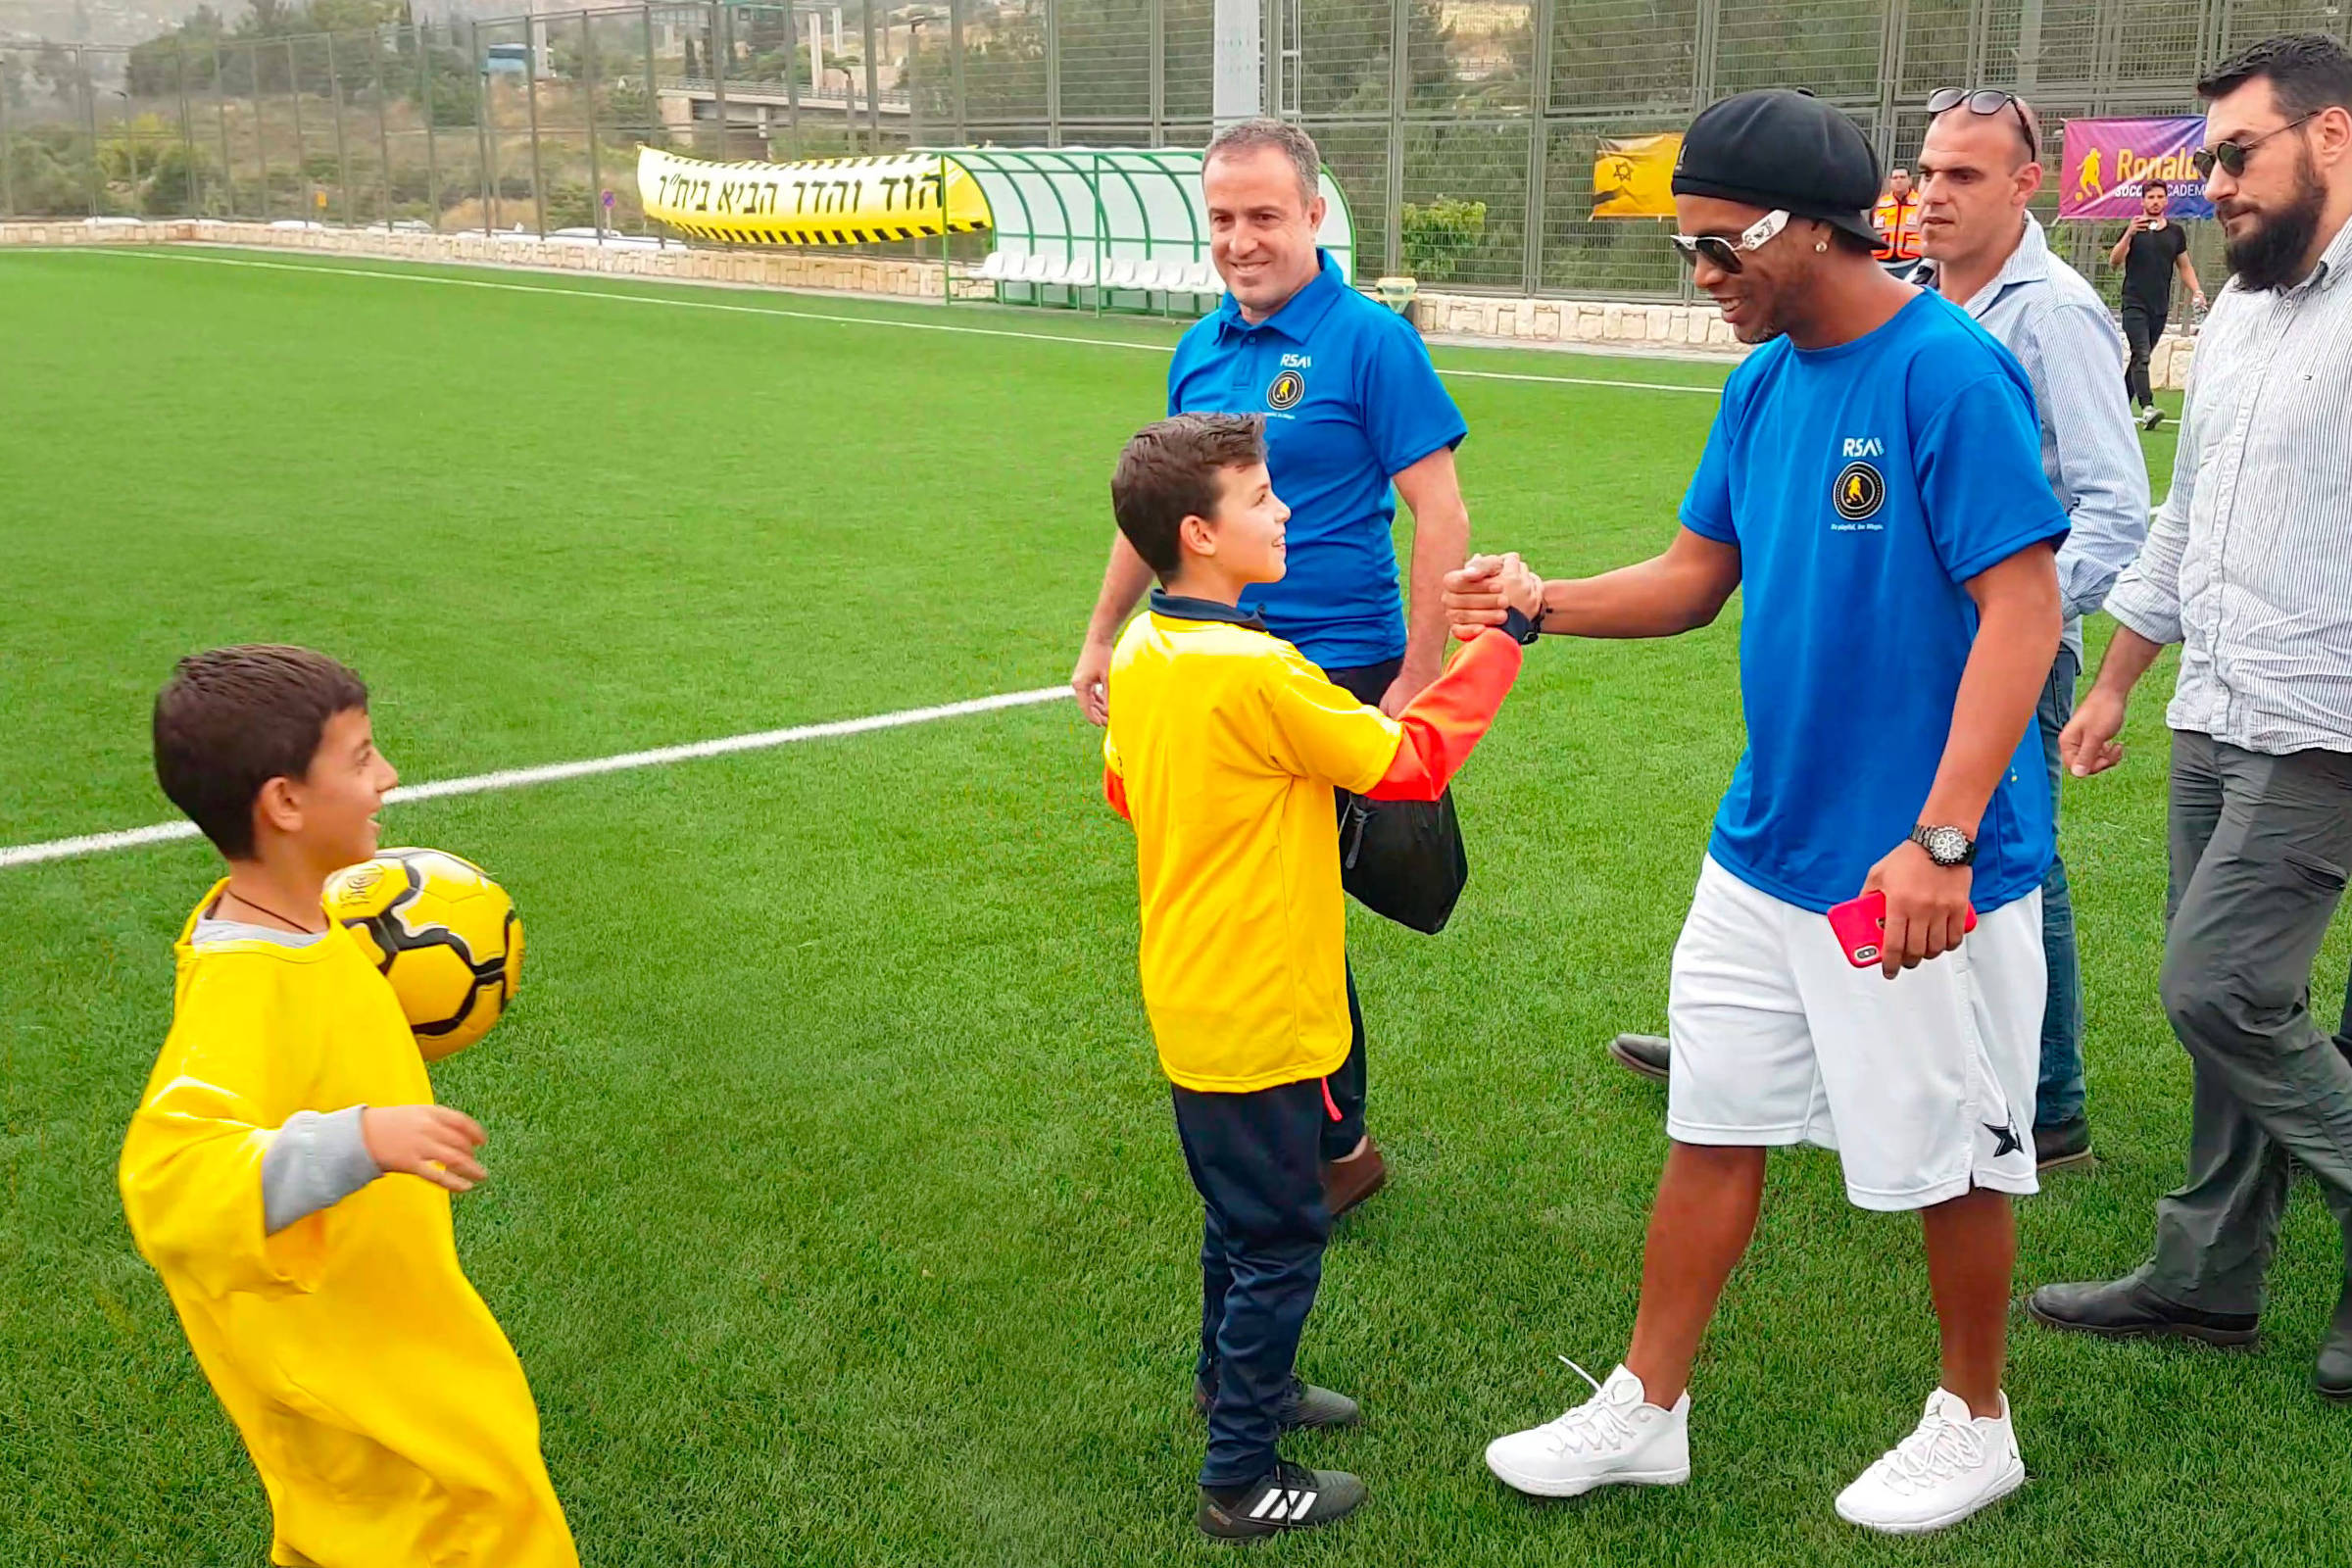 Escolinha do Ronaldinho Gaúcho em Santa Rosa tem vagas limitadas